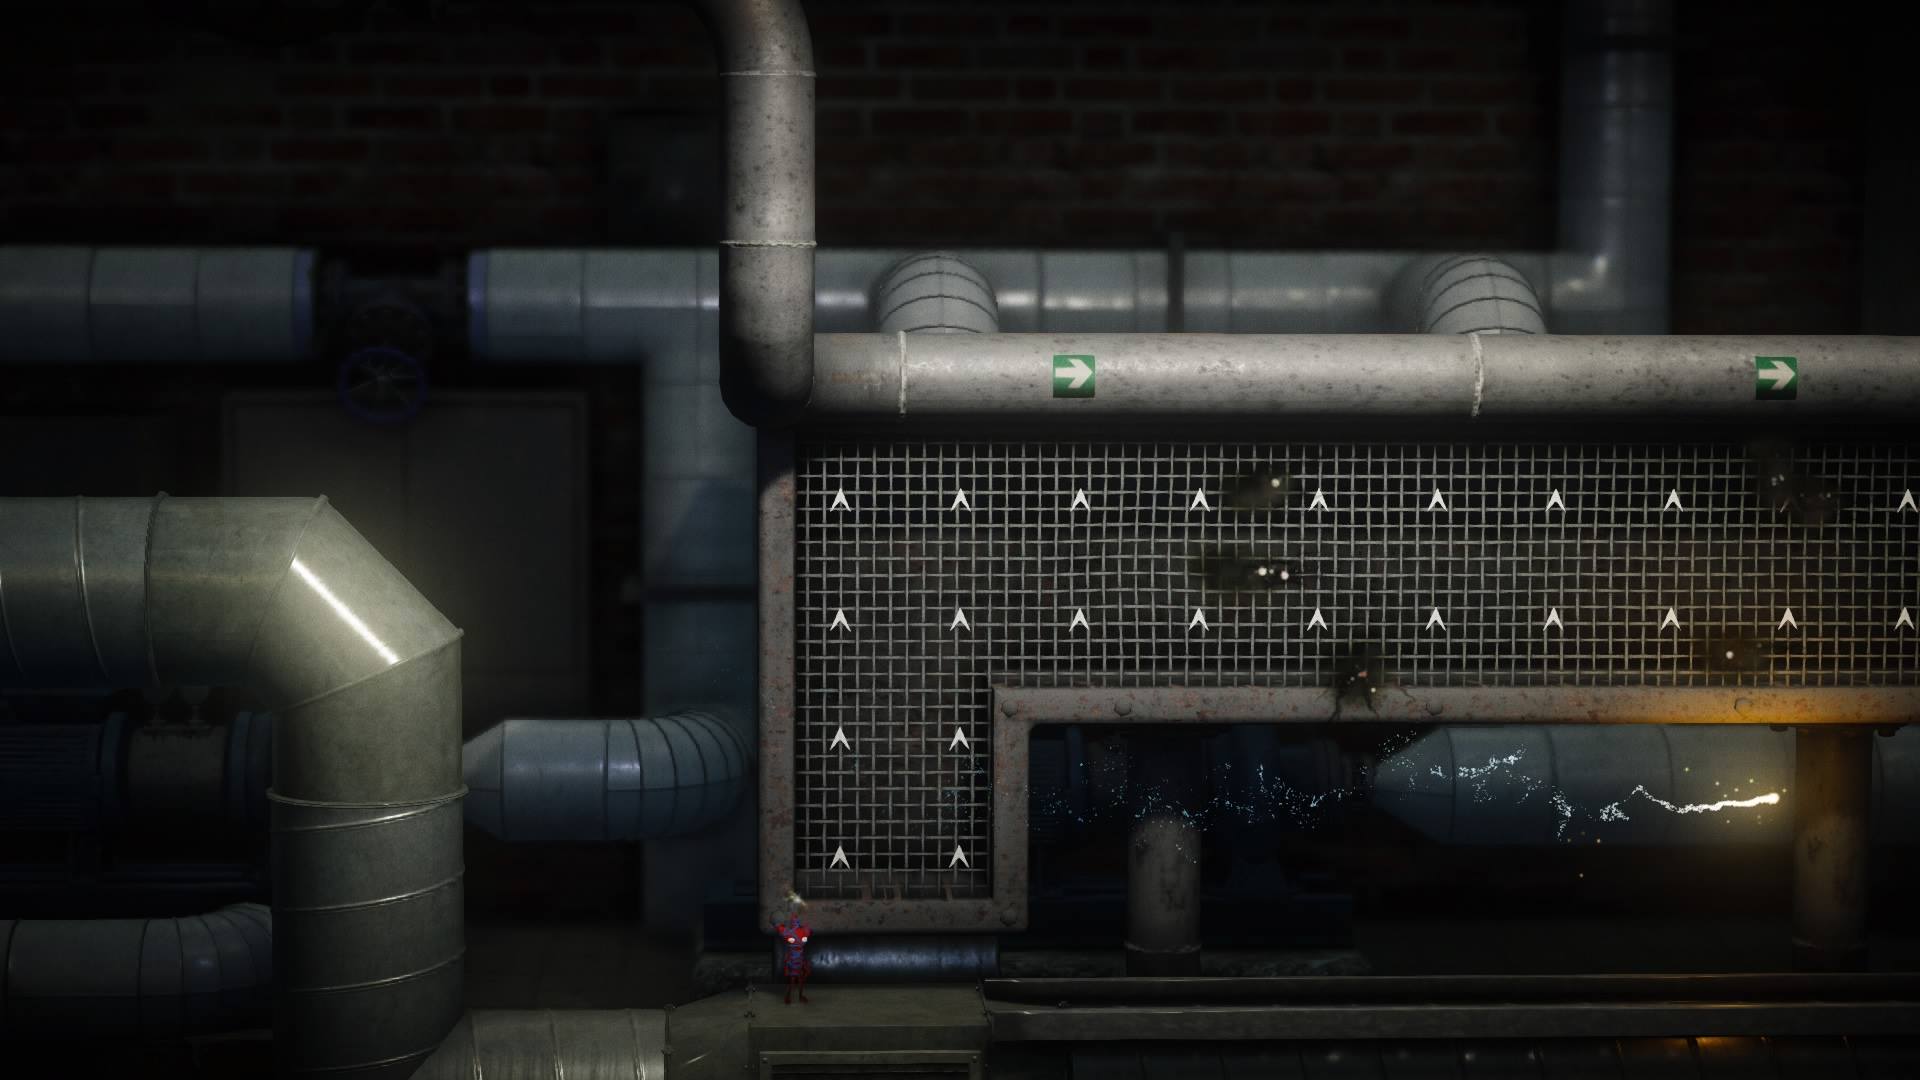 Análise  Unravel Two é um belo game, mas não tem o impacto do primeiro  jogo - Combo Infinito